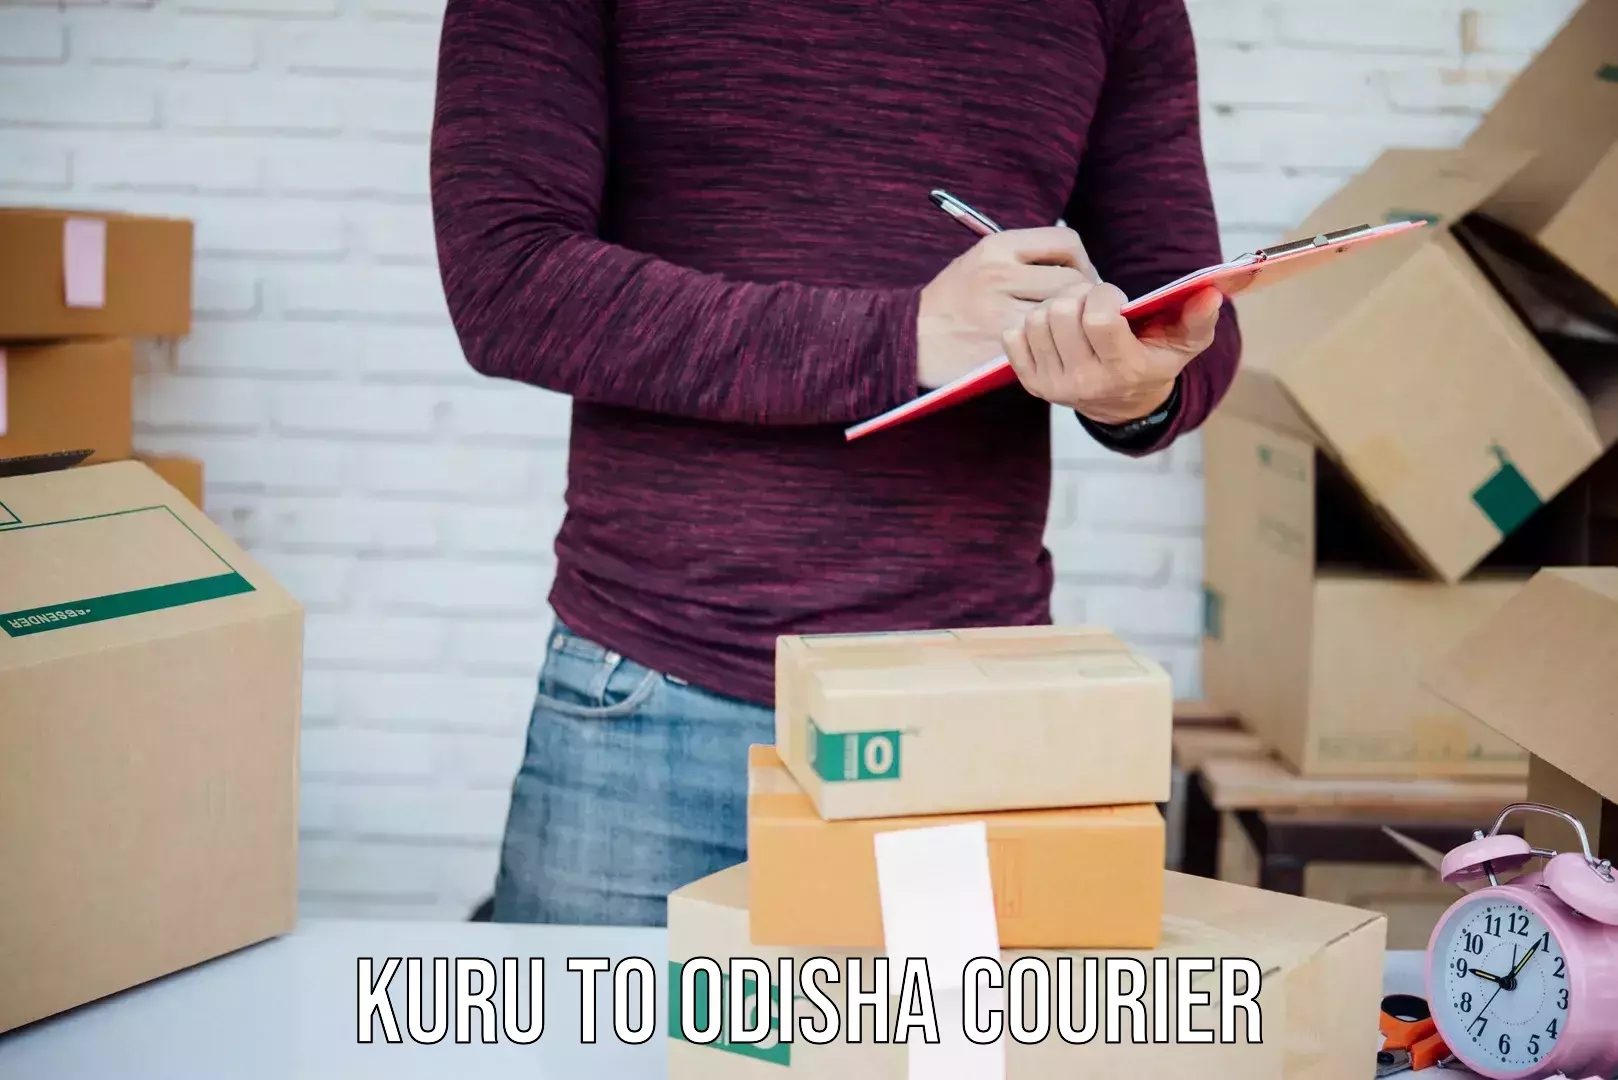 Logistics service provider Kuru to Odisha